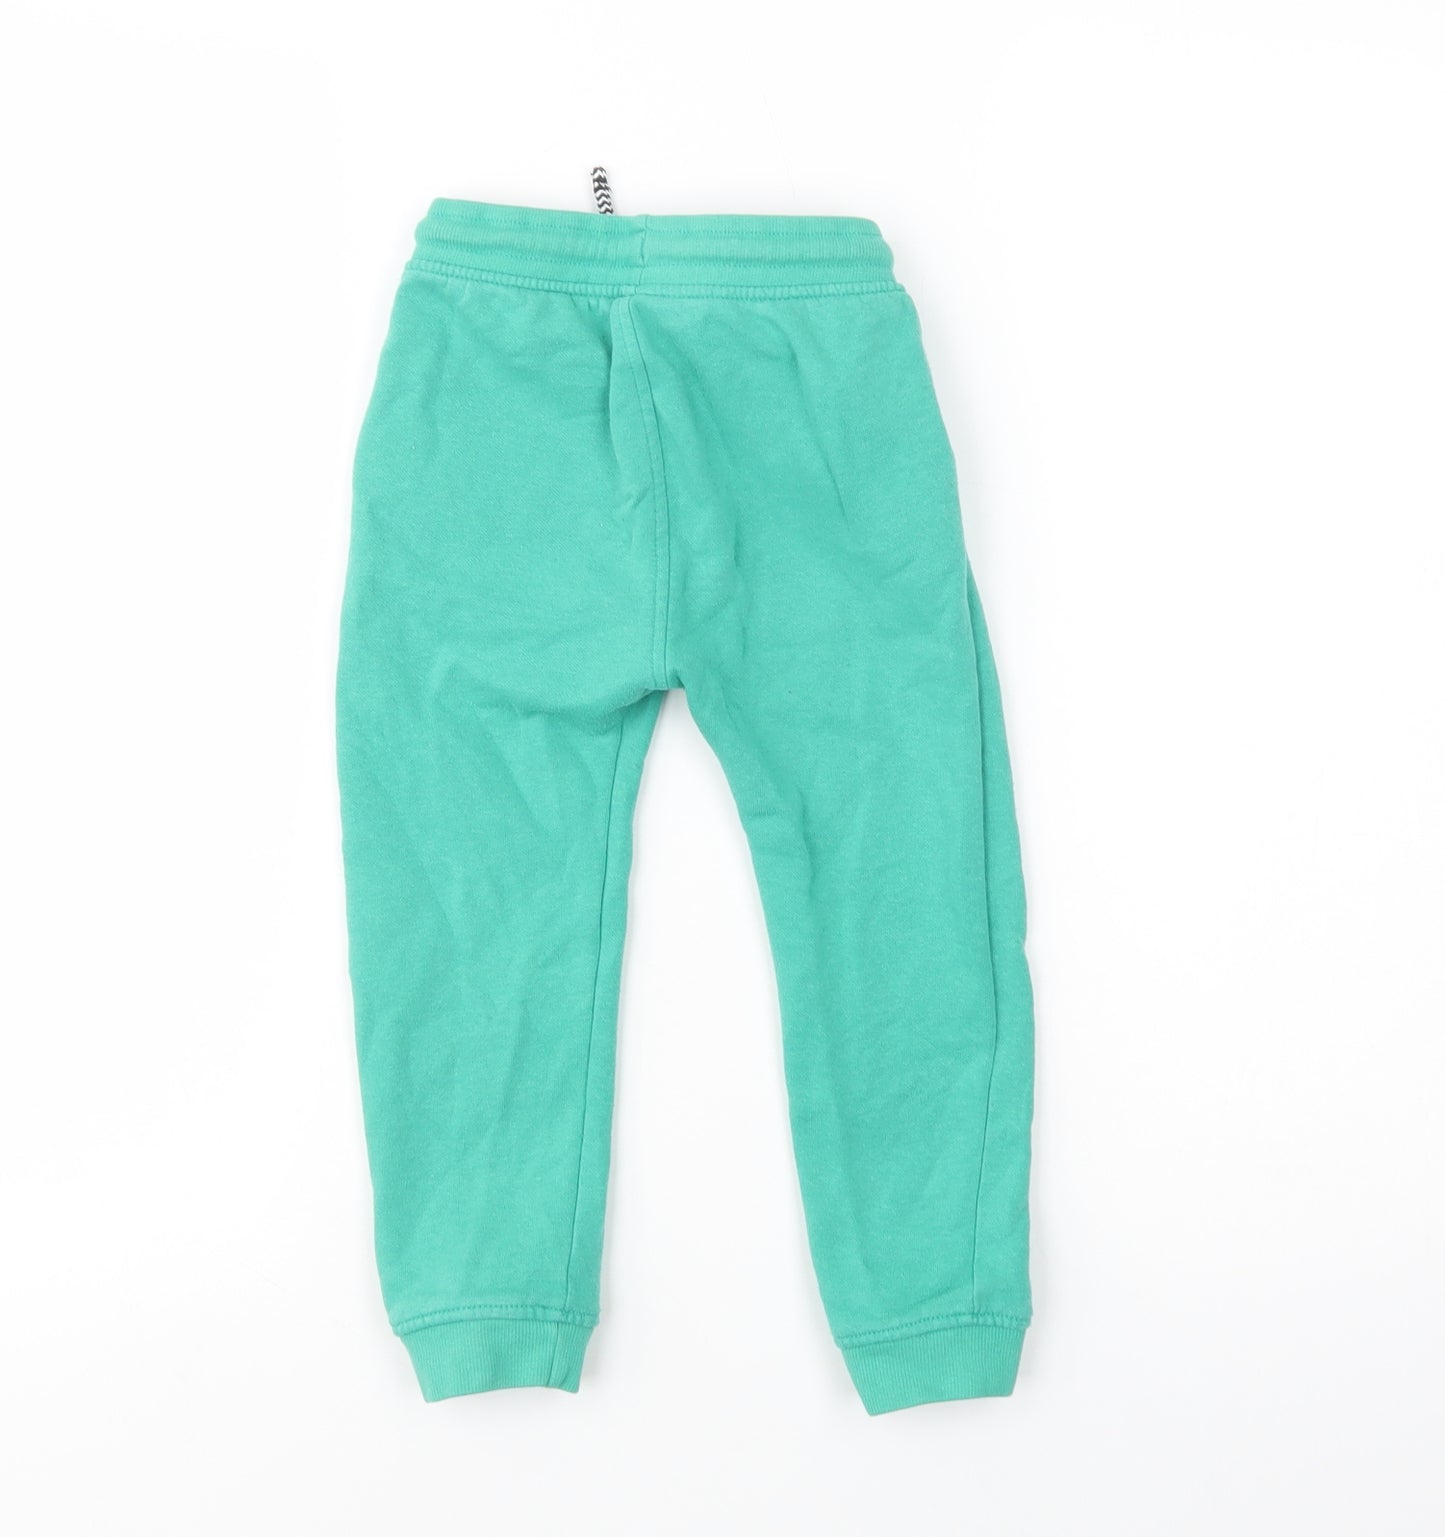 Matalan Girls Green  Cotton Jogger Trousers Size 3-4 Years  Regular Drawstring